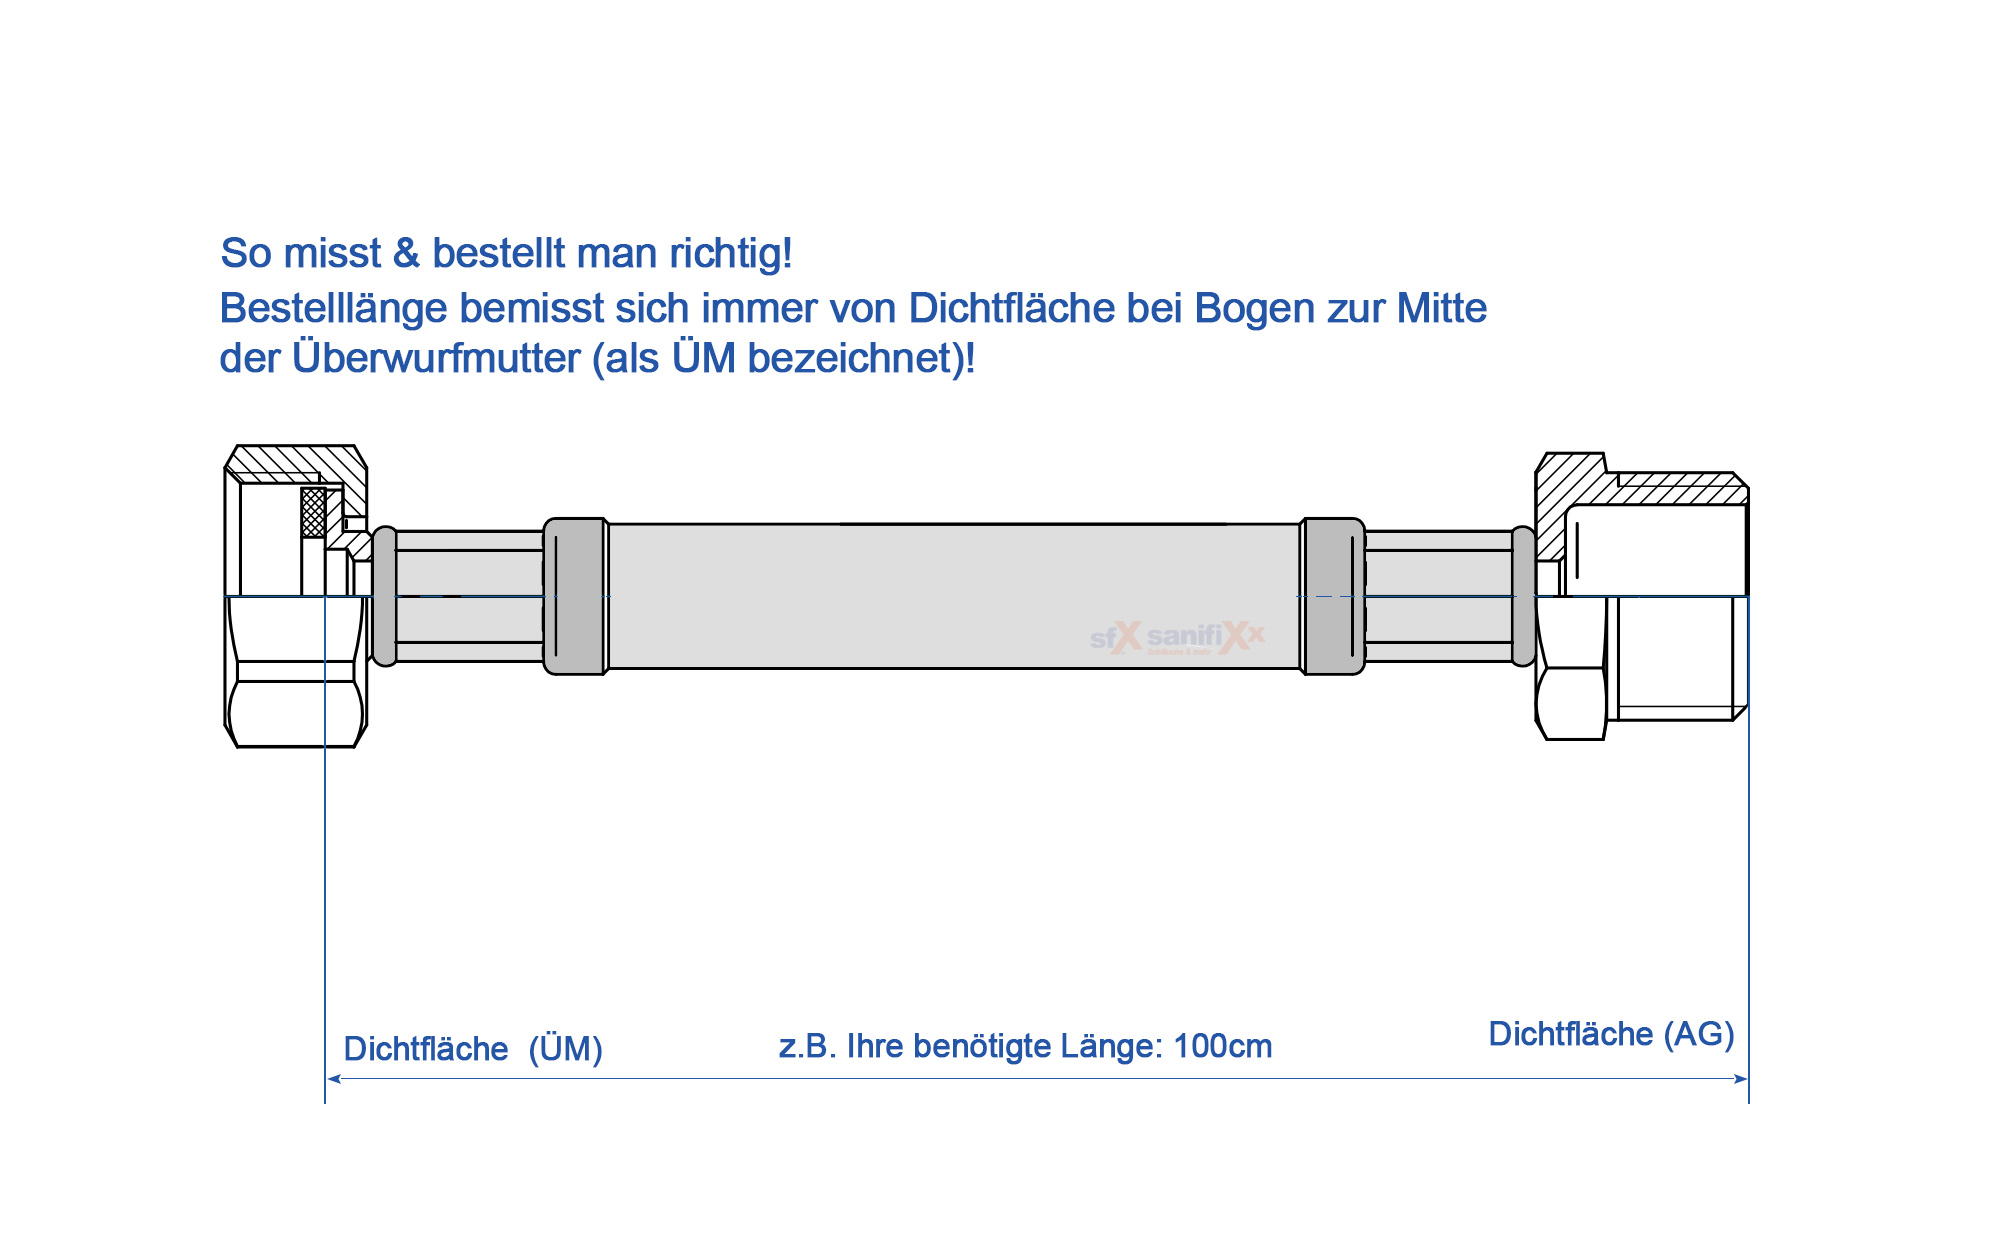 SFX® Panzerschlauch DN19 - 3/4 ÜM x 3/4 ÜM Trinkwasser Edelstahl  Flexschlauch